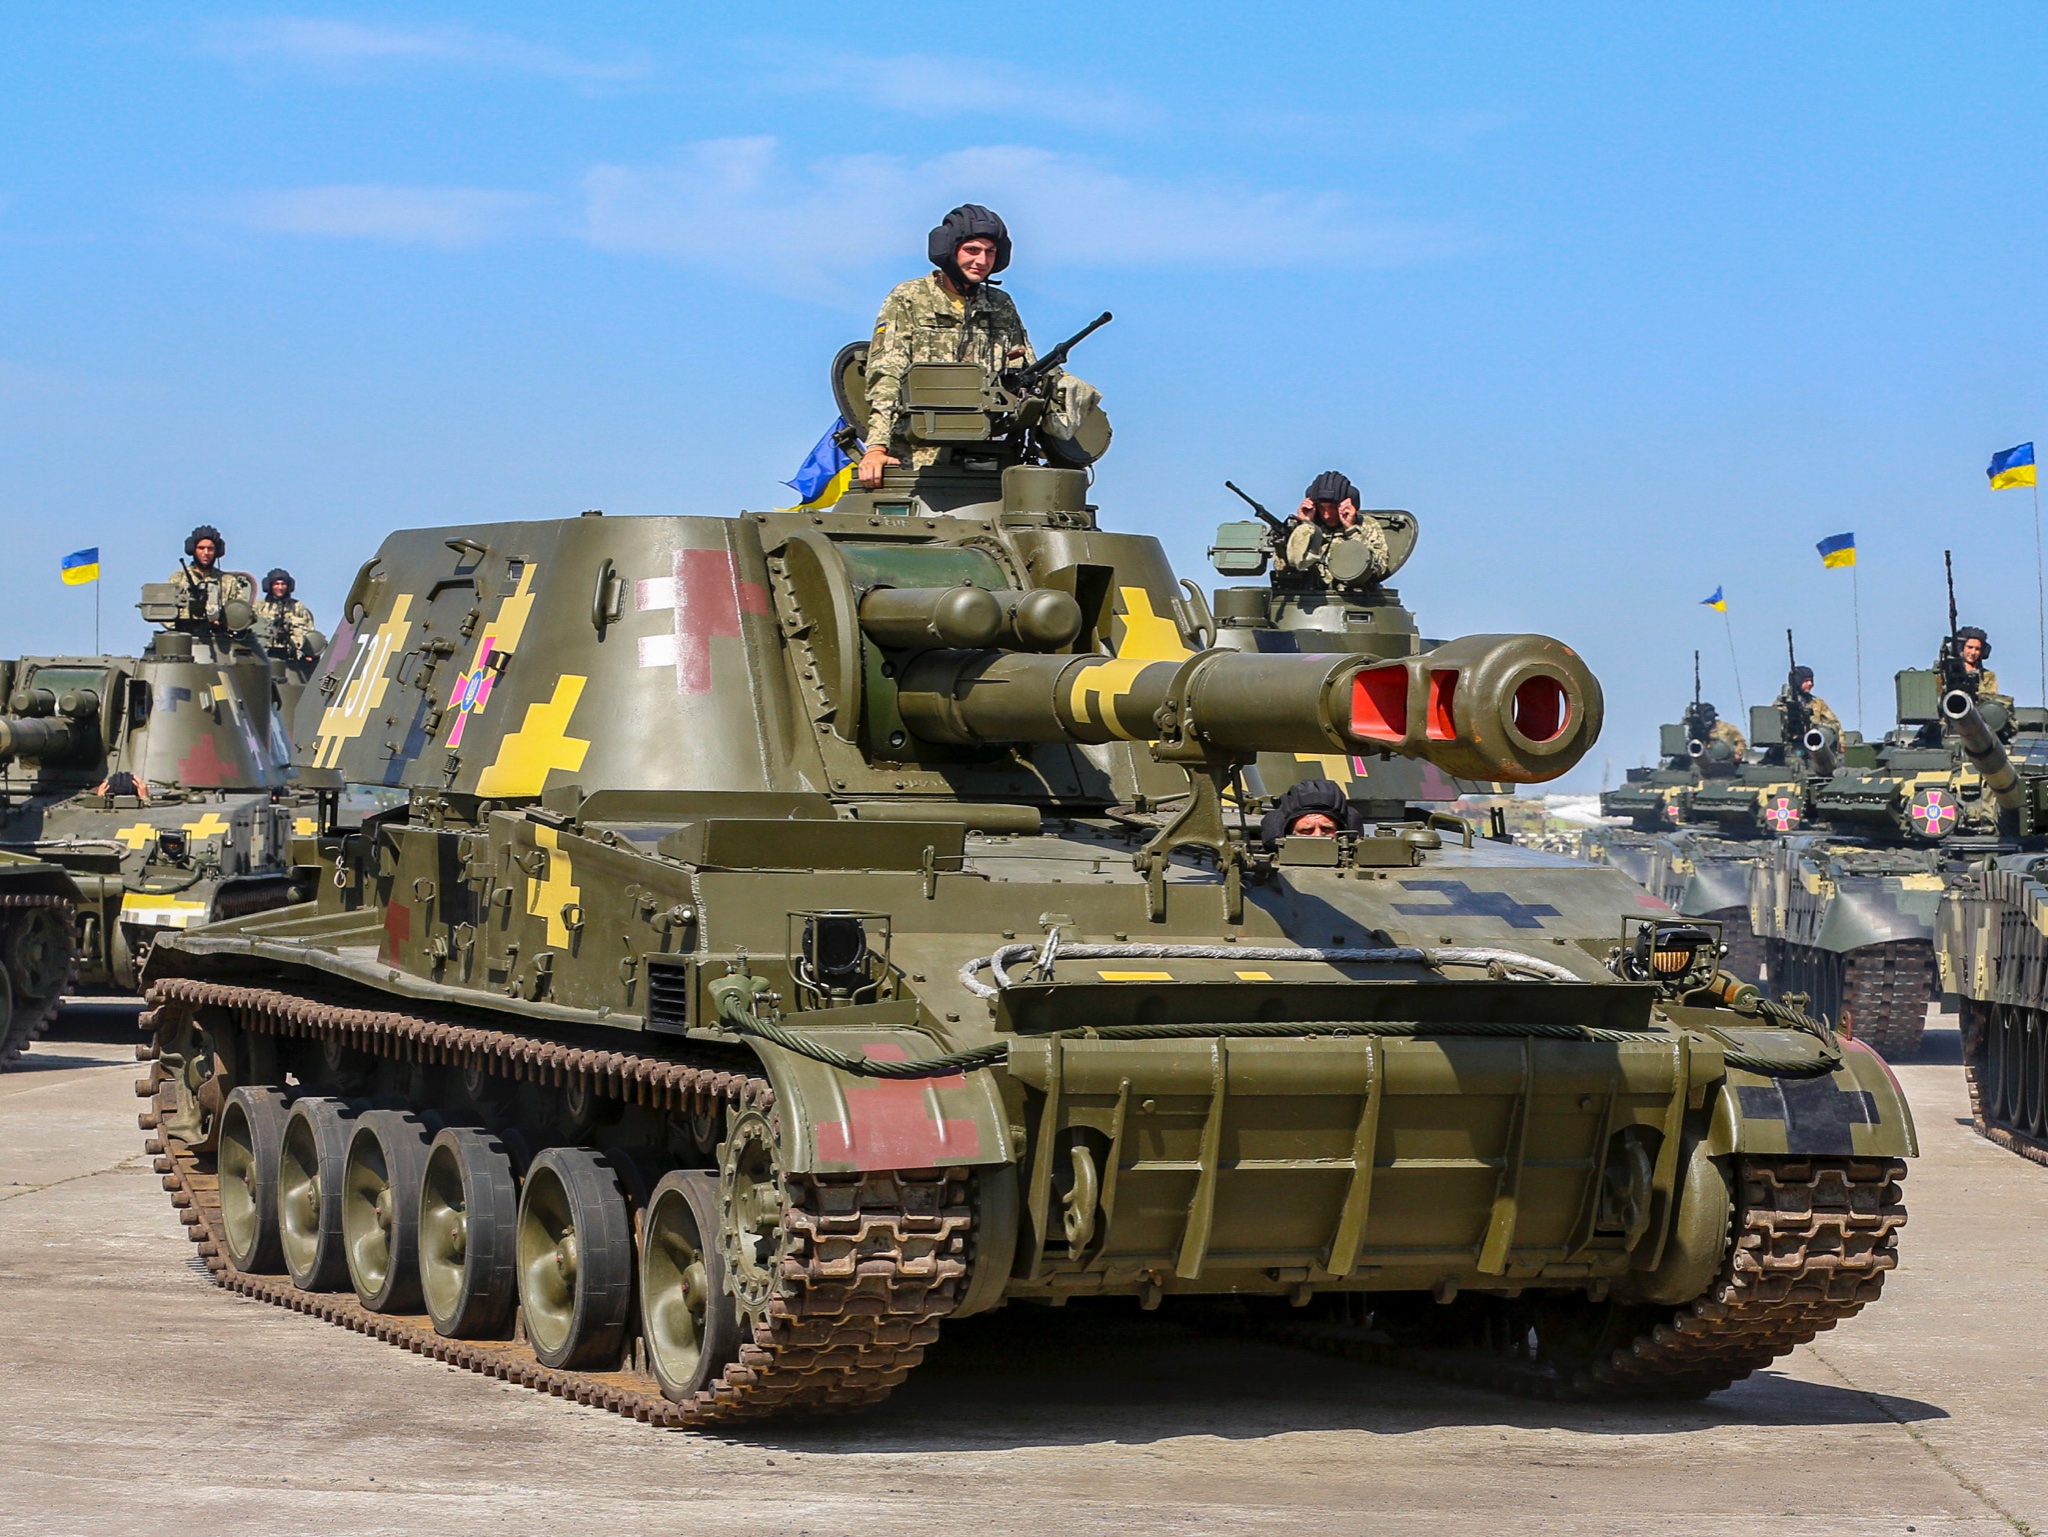 Δημοψηφίσματα Ουκρανία – Ρωσία: Οι Ουκρανικές δυνάμεις ζητούν όπλα